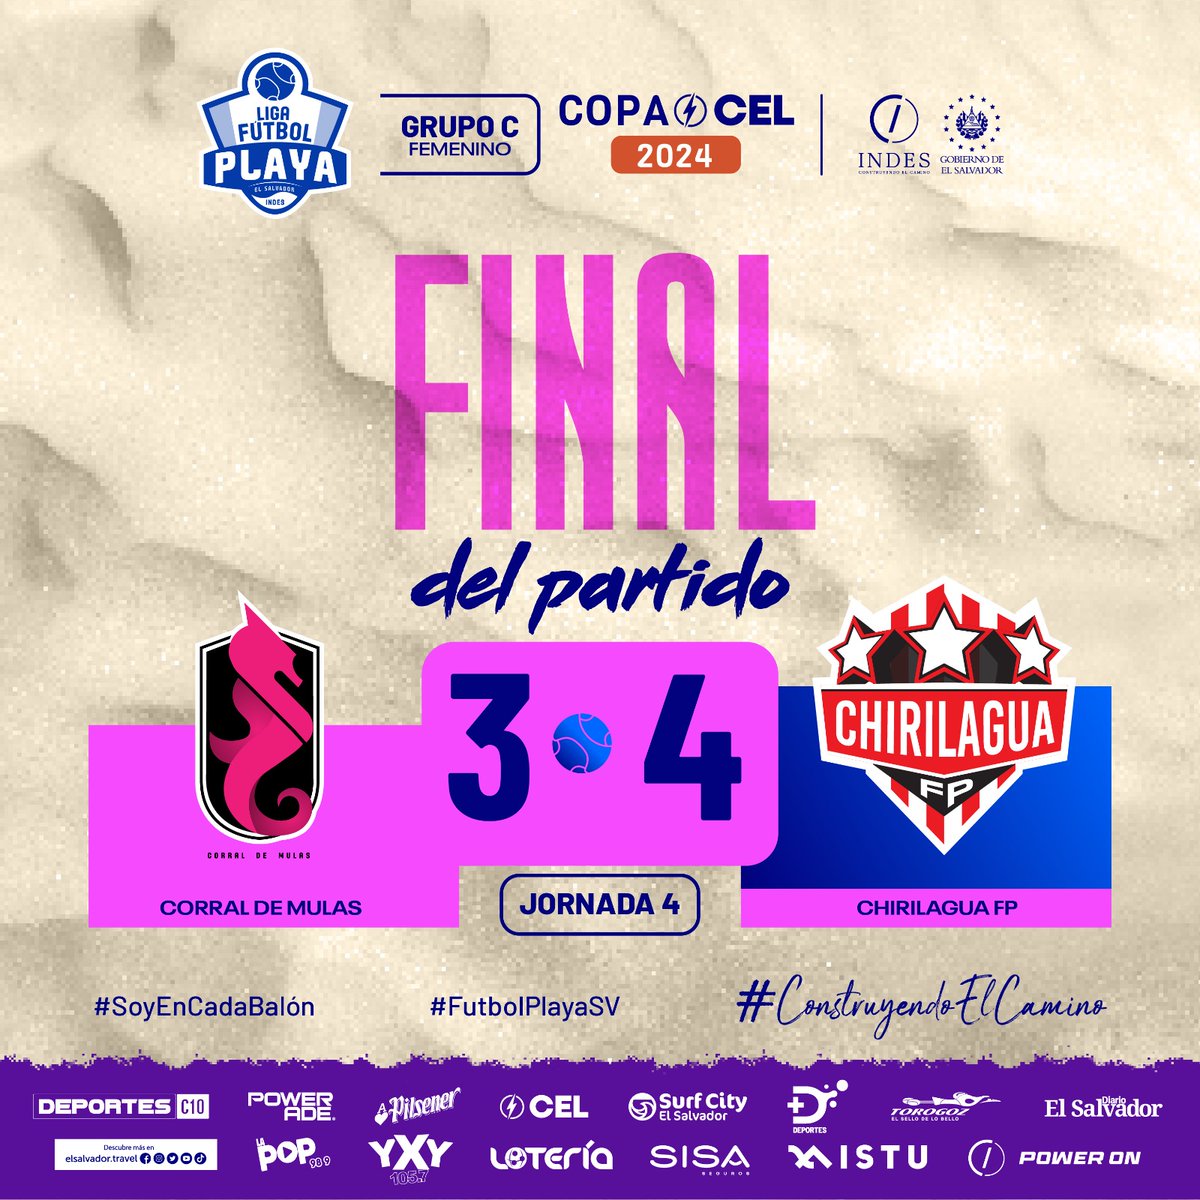 Final del partido | 🔥 Corral de Mulas 3 🆚️ 4 Chirilagua FP 📍 Corral de Mula. 🗣 Grupo C, femenino. #ConstruyendoElCamino